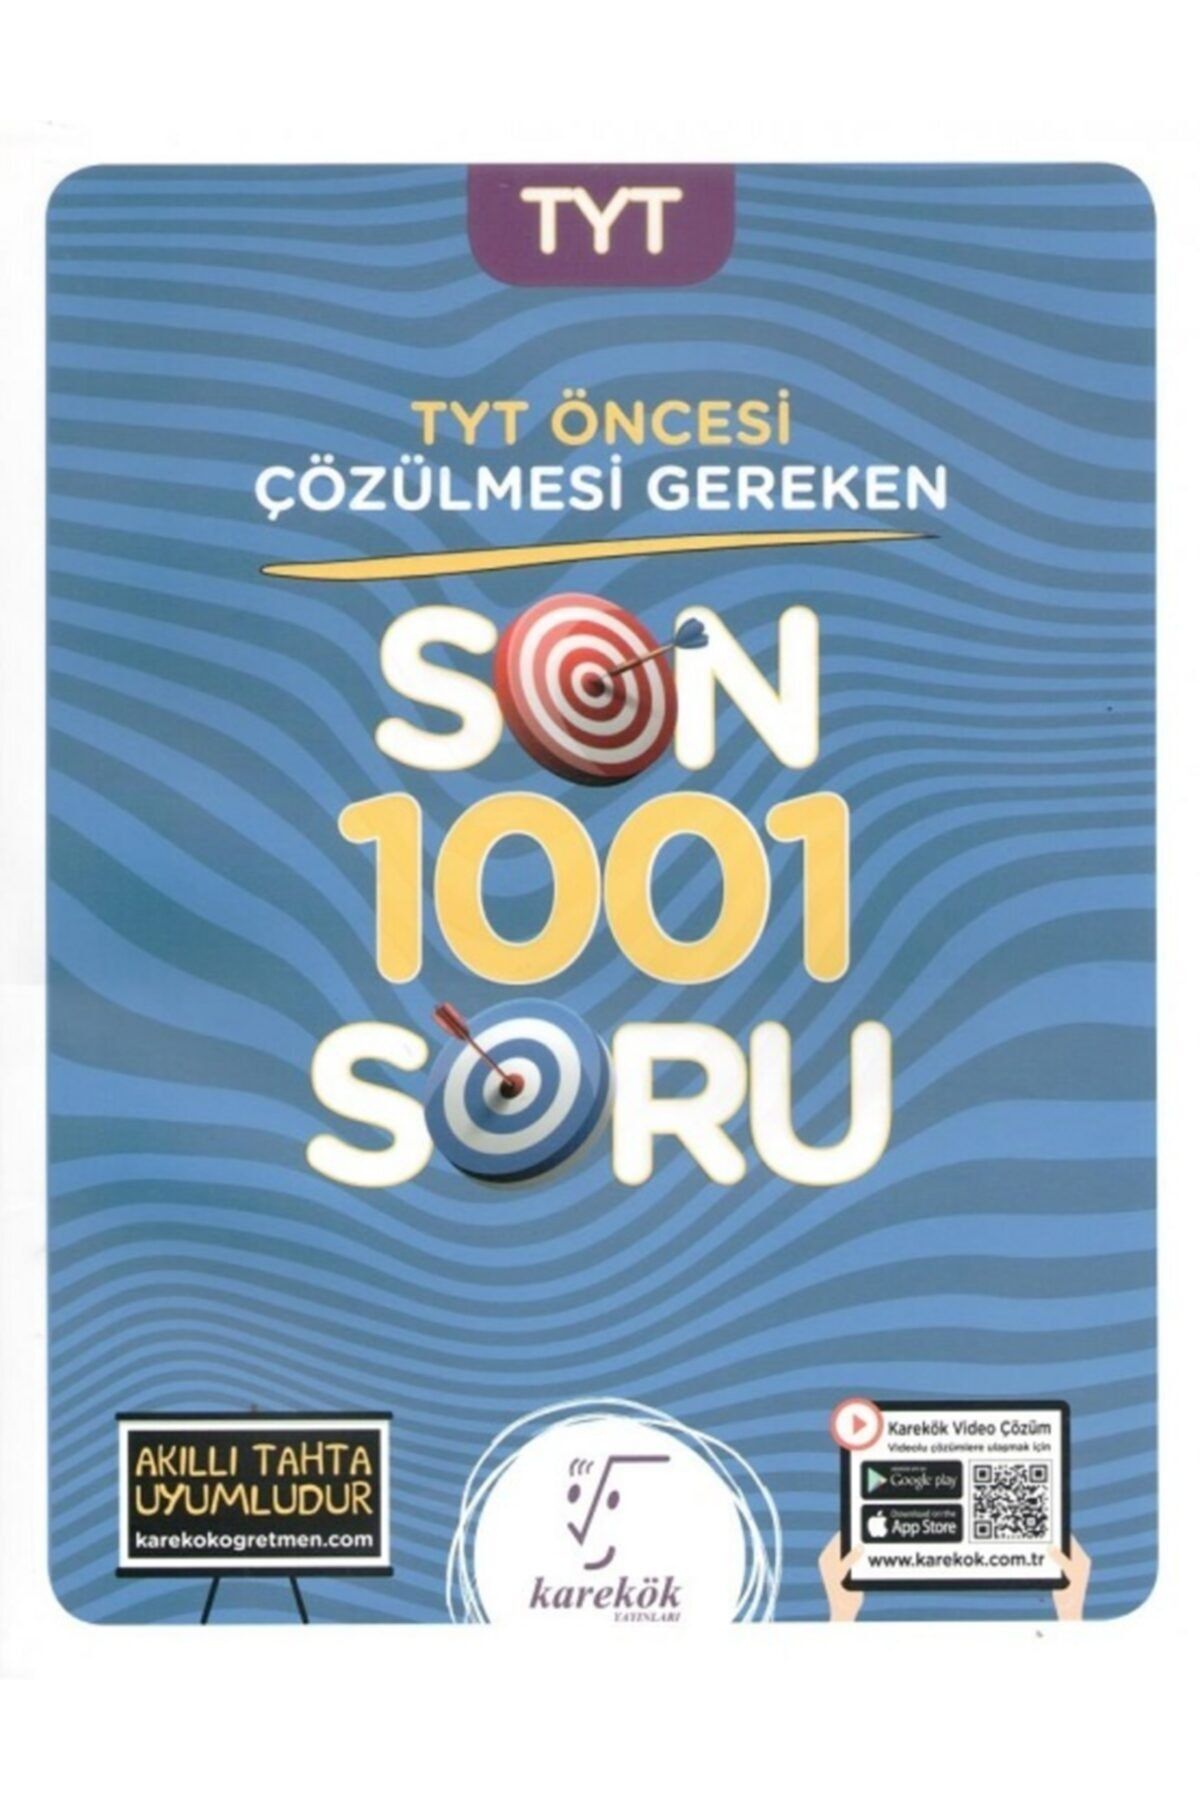 Karekök Yayınları Karekök Tyt Öncesi Çözülmesi Gereken Son 1001 Soru